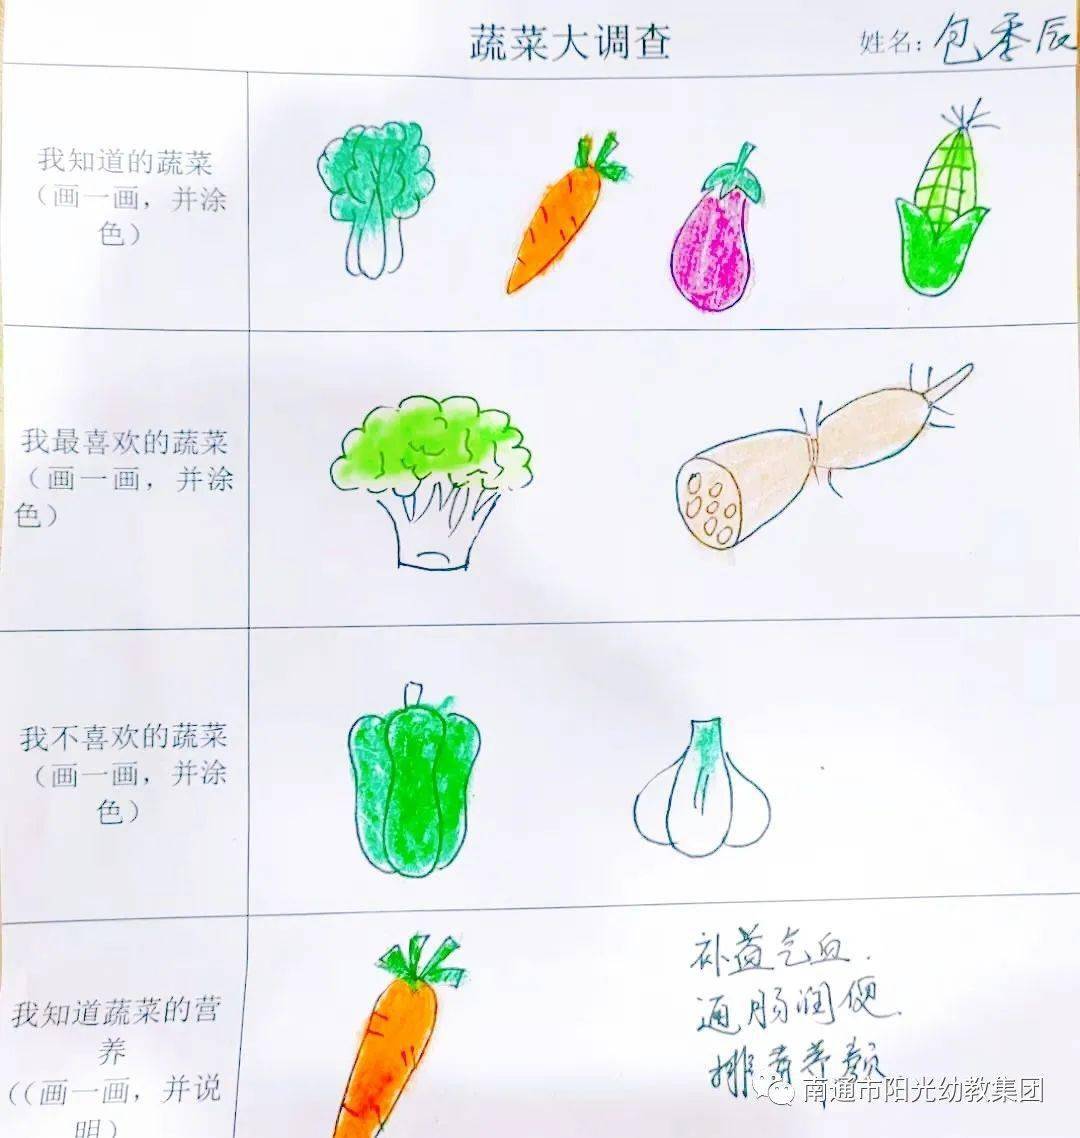 多彩的蔬菜主题网络图图片